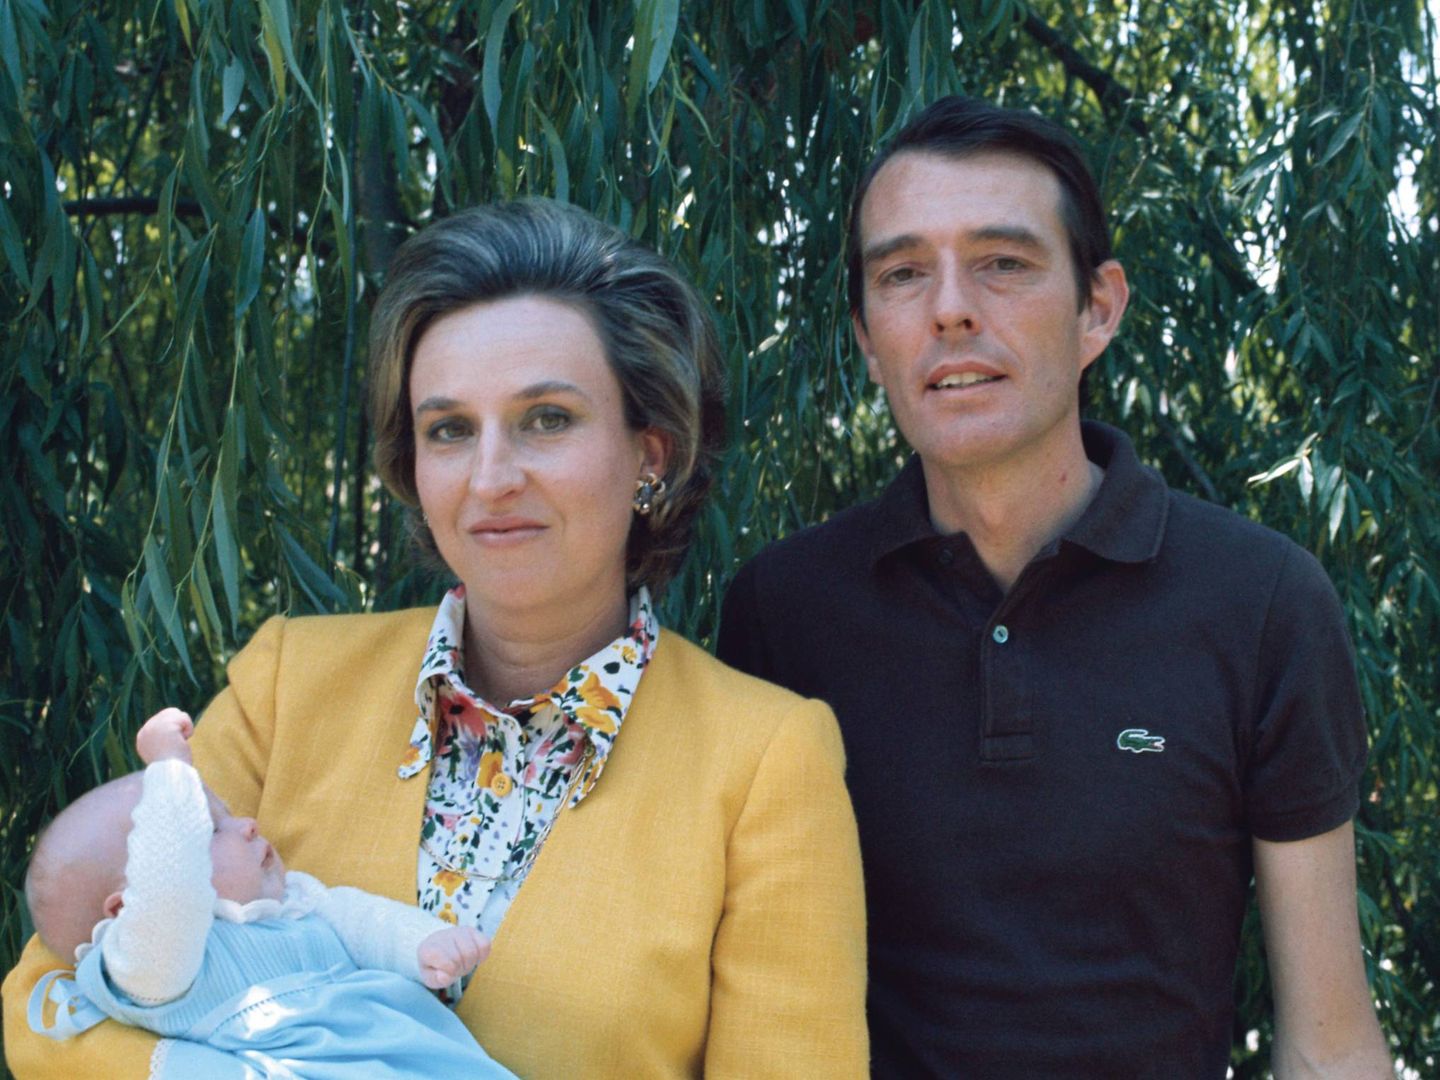 Doña Pilar y Luis Gómez-Acebo, con el pequeño Beltrán en brazos. (Getty)